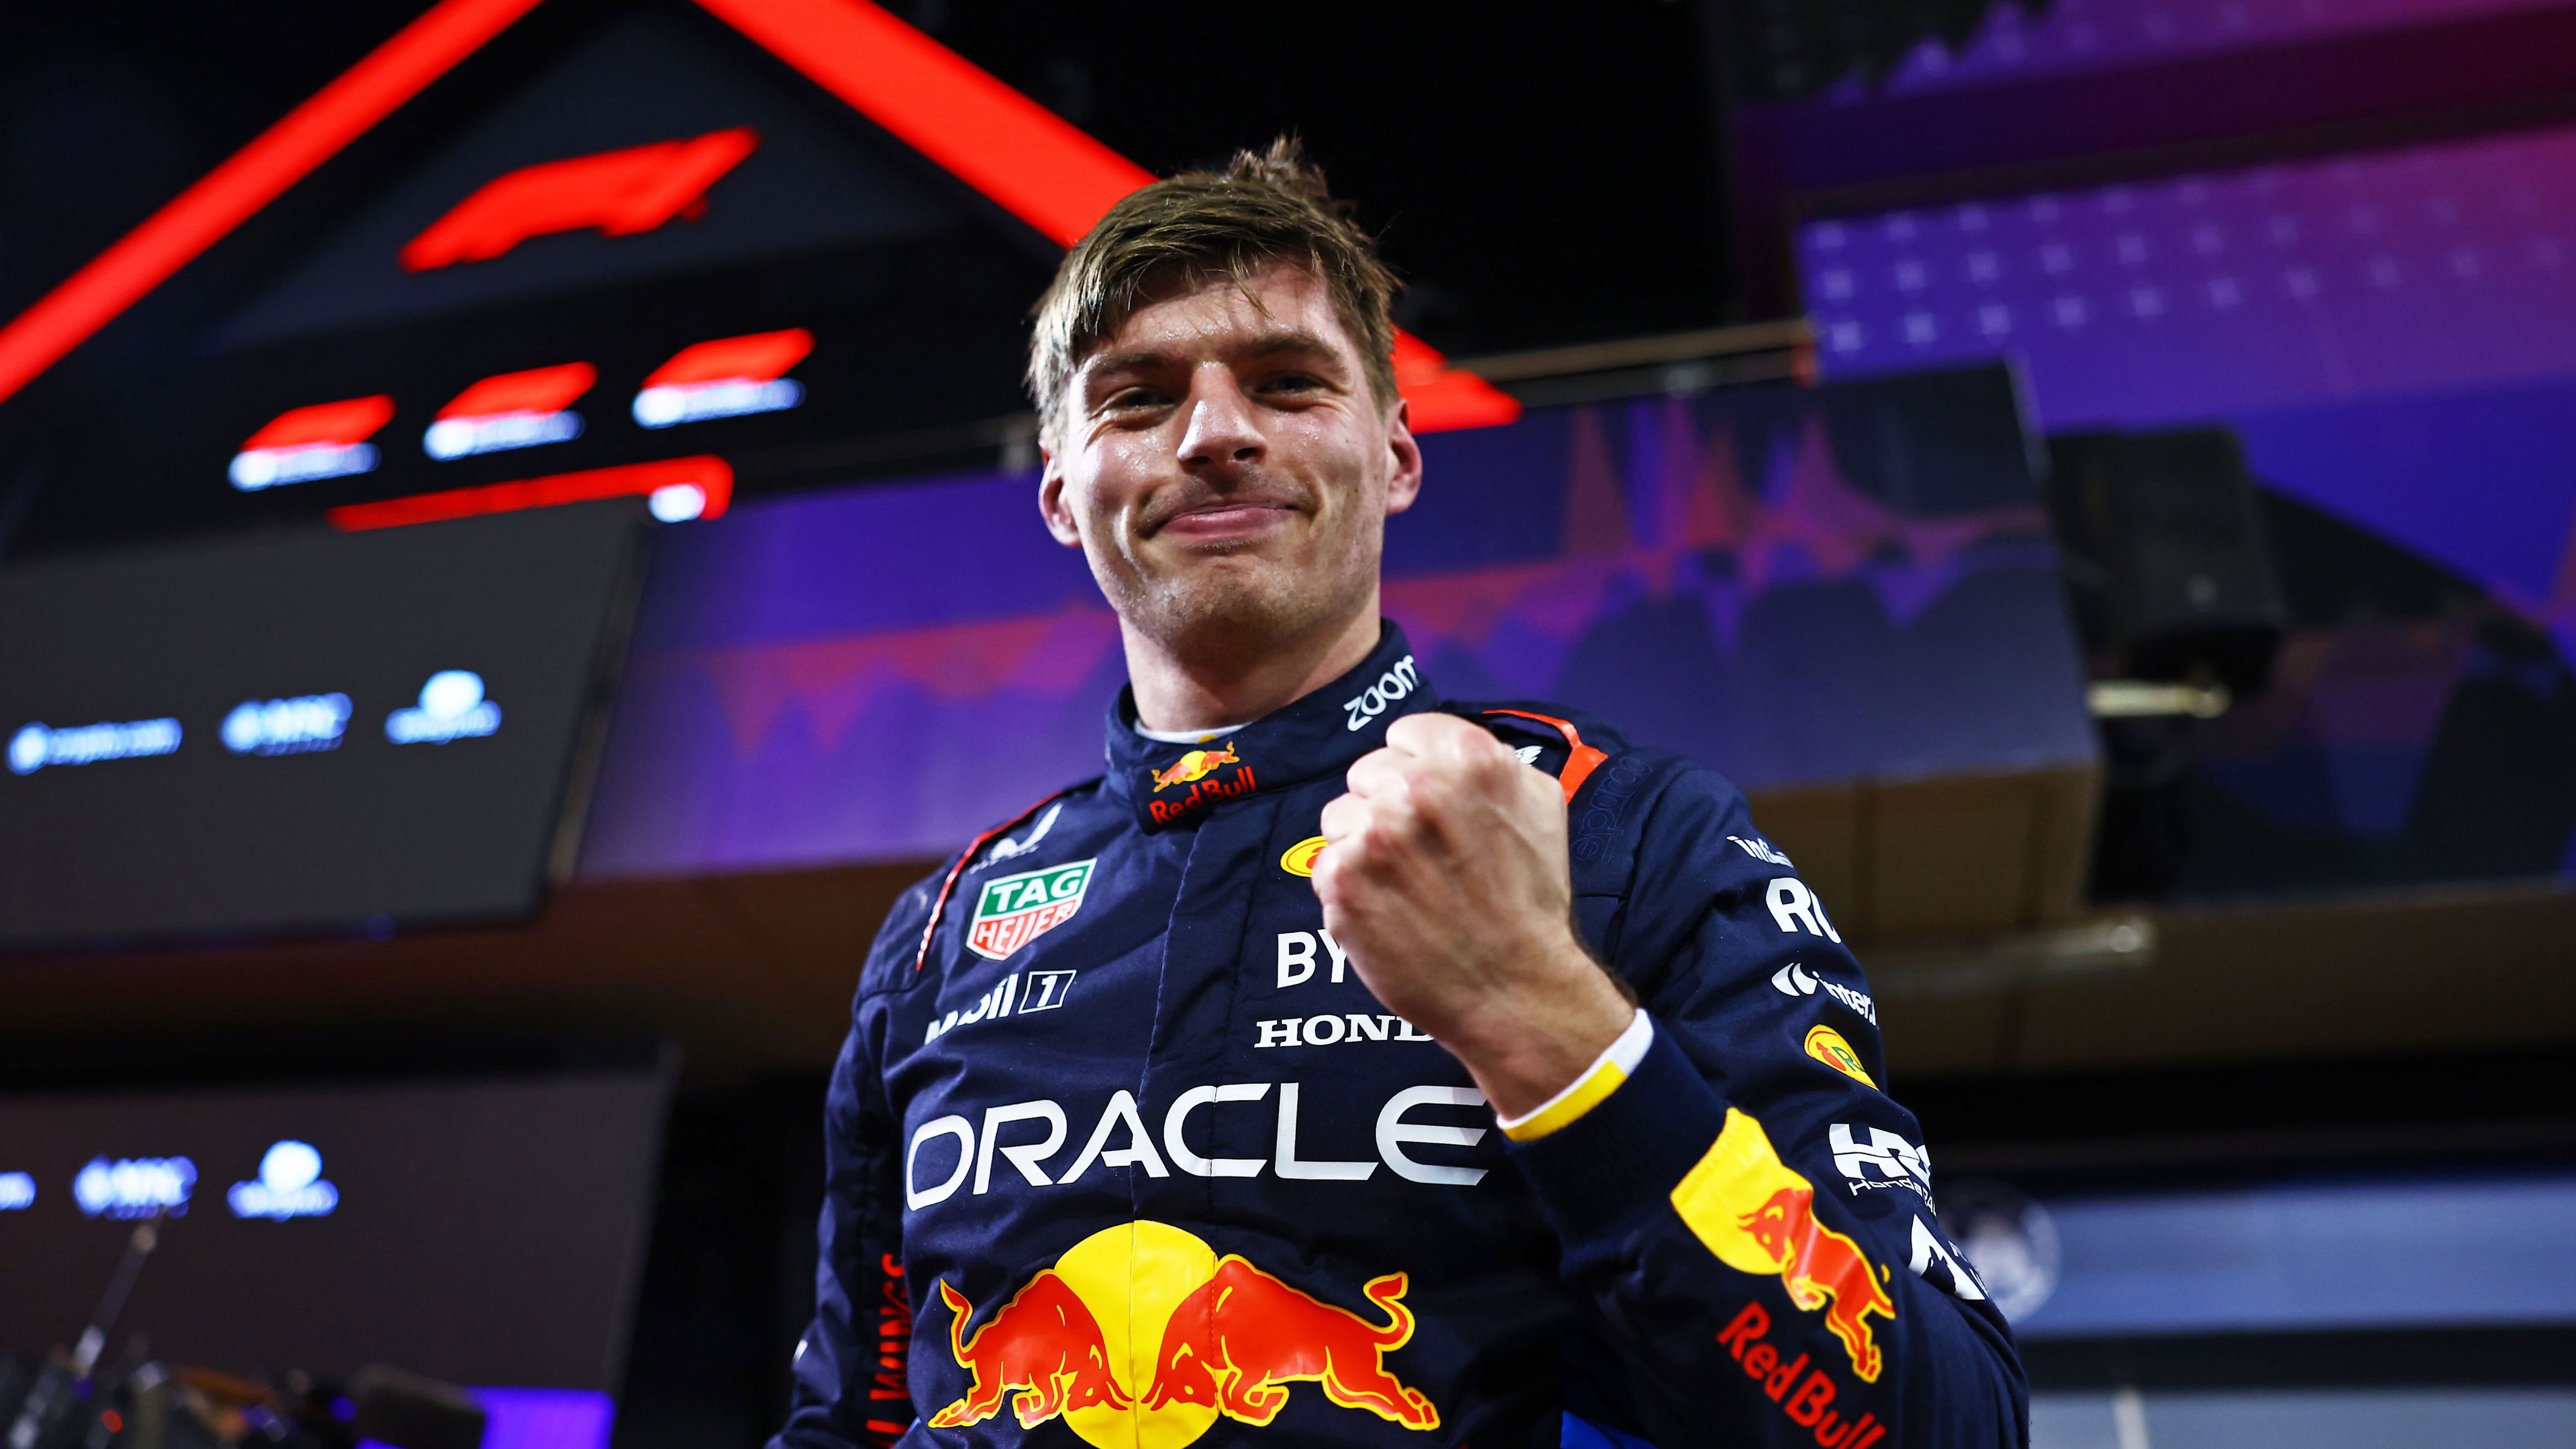 fórmula 1 | max verstappen ganó el gran premio de baréin: así quedó la clasificación general